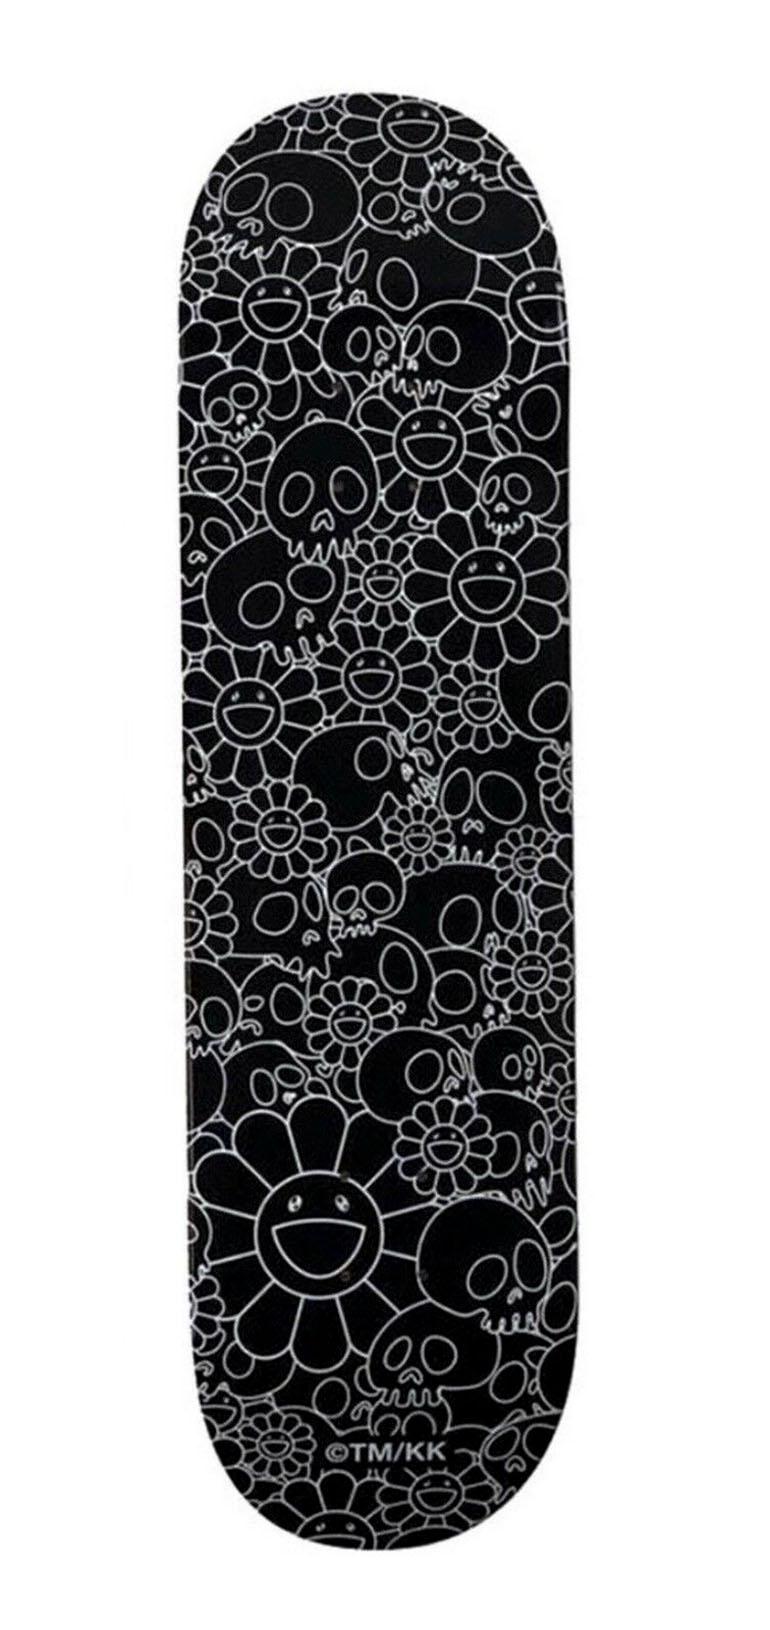 Takashi Murakami Flowers & Skulls Skateboard Deck (Schwarz und Weiß):
Ein lebhaftes Stück Wandkunst von Takashi Murakami, das 2018 in Zusammenarbeit mit Complexcon und Kaikai Kiki co. in einer limitierten Serie produziert wurde. Dieses Deck ist neu